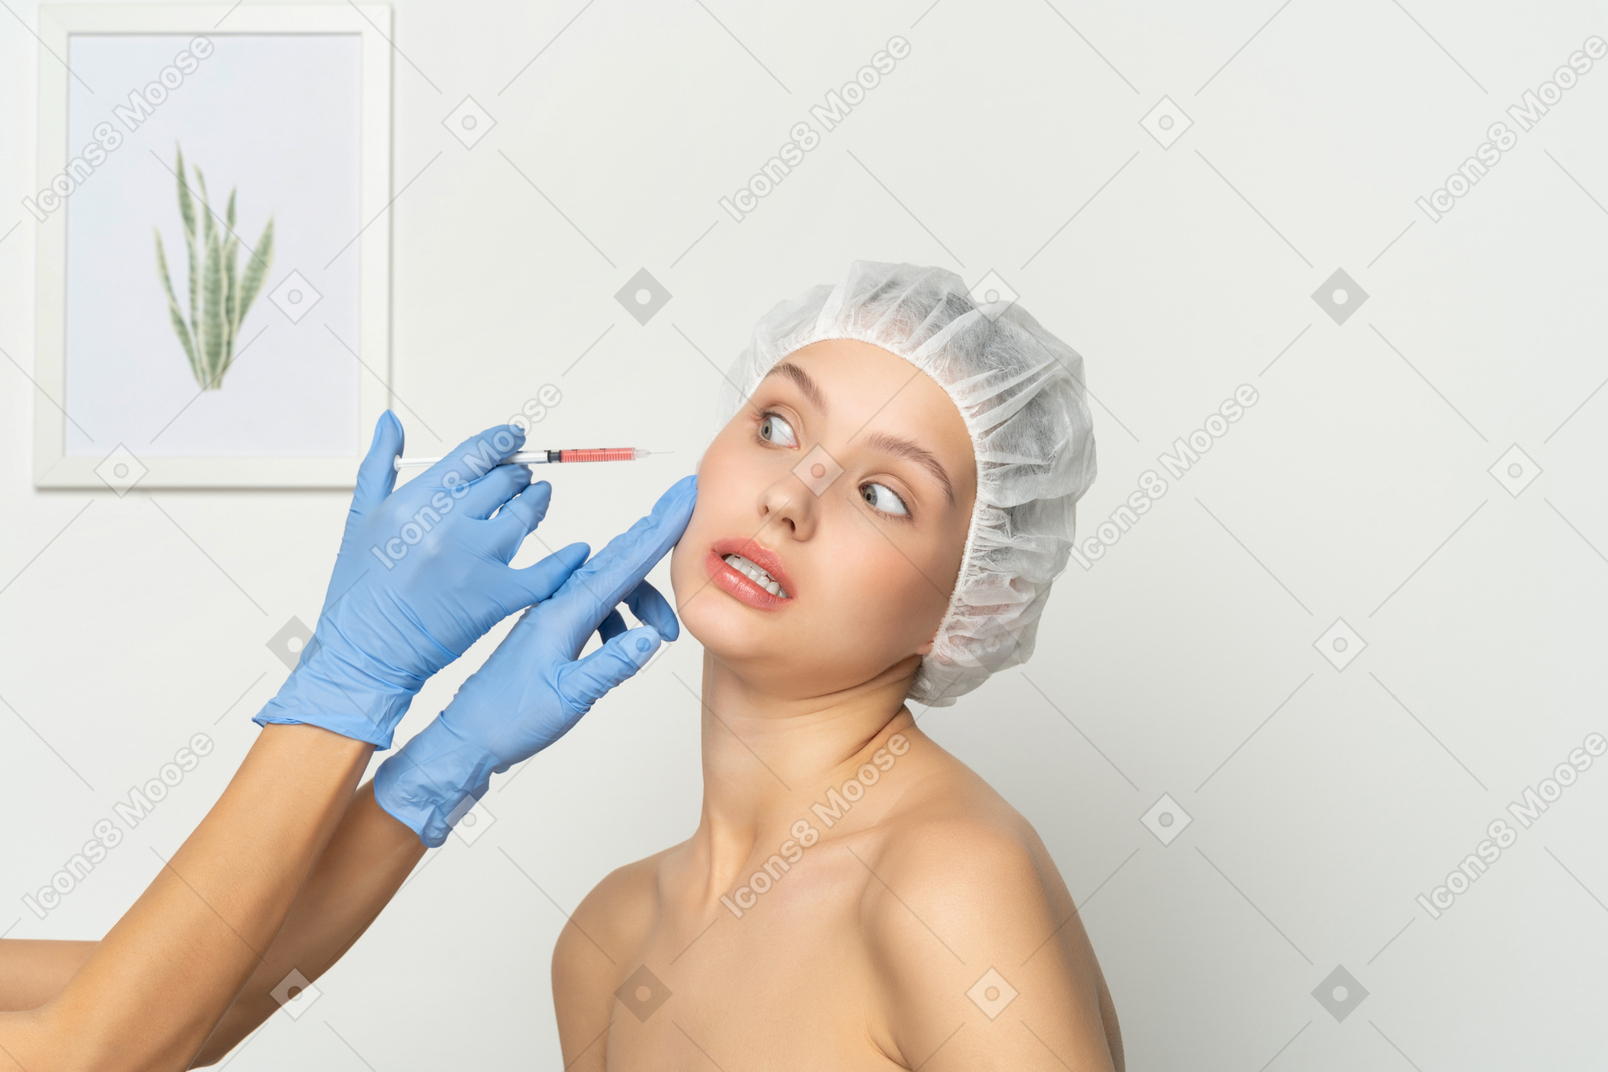 Frau, die während der injektion des füllstoffs verängstigt aussieht